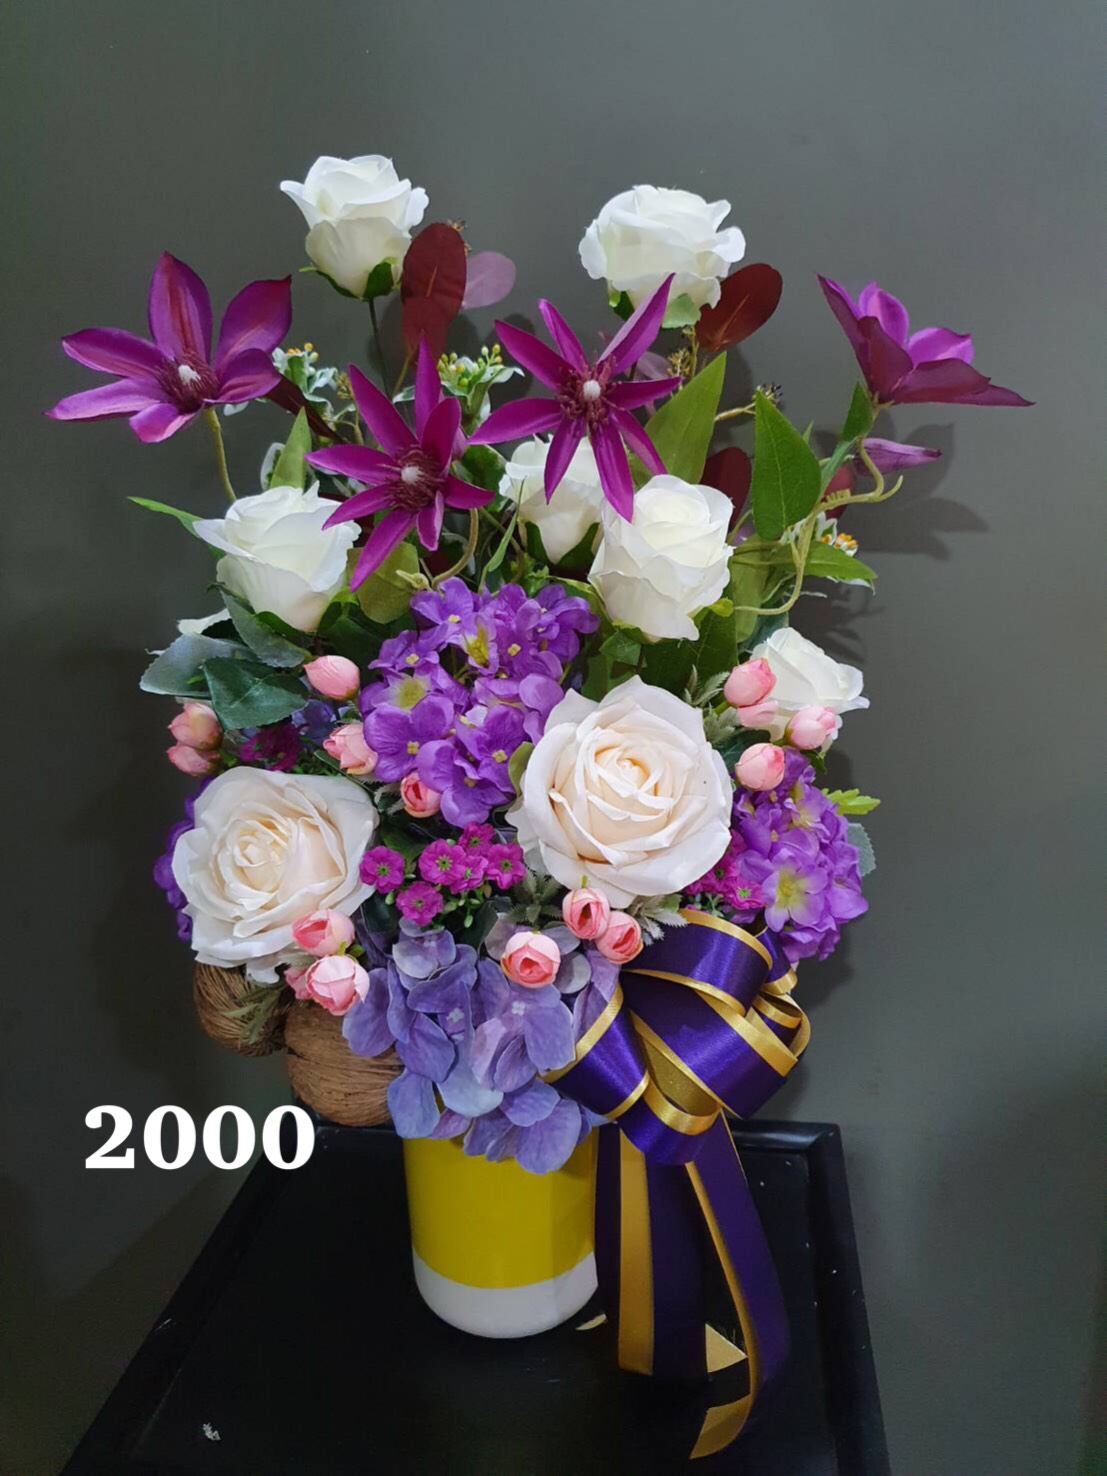 AF-24 สินค้าตกแต่งบ้าน, ดอกไม้ประดิษฐ์, ดอกไม้ปลอม, ของขวัญขึ้นบ้านใหม่, แจกันดอกไม้ประดิษฐ์, เปิดกิจการใหม่, เลื่อนตำแหน่ง, เลื่อนยศ, ของขวัญปีใหม่,